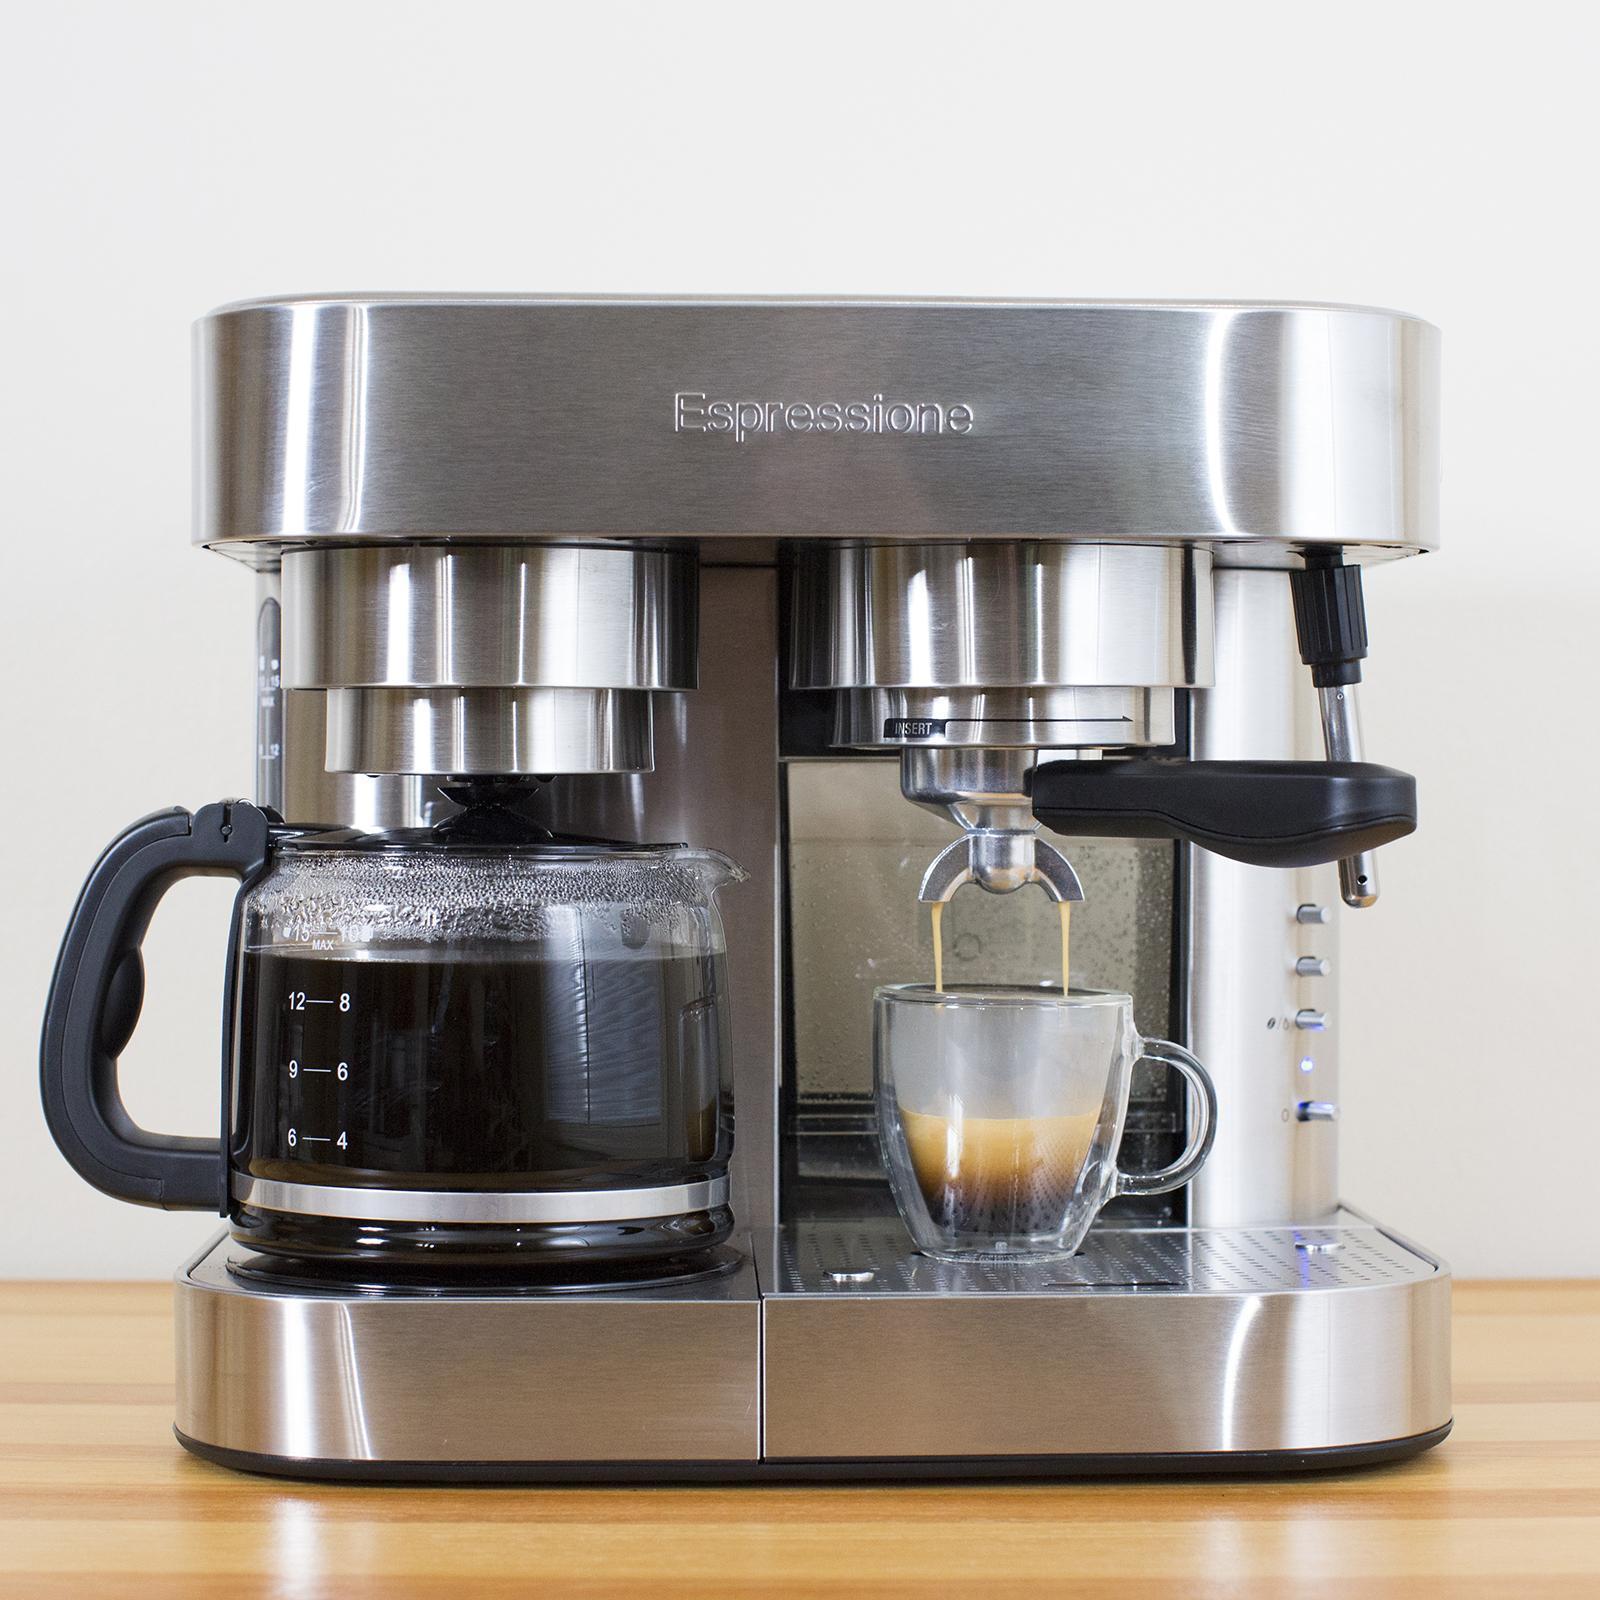 Combination Espresso Machine and Drip Coffee Maker